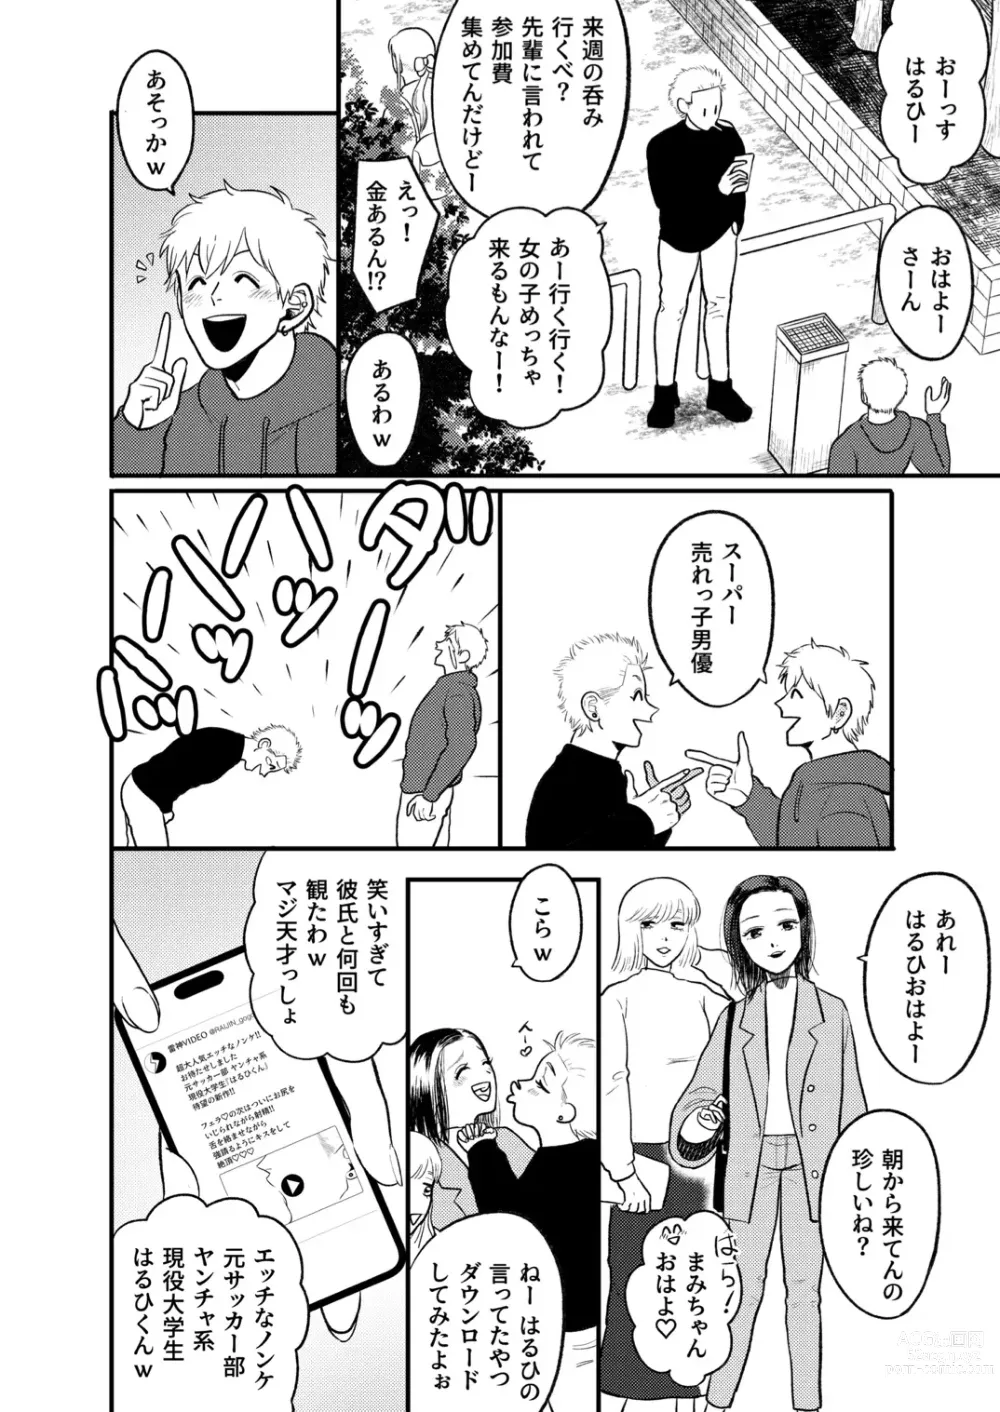 Page 5 of doujinshi Kashikoi Okane no Kasegikata